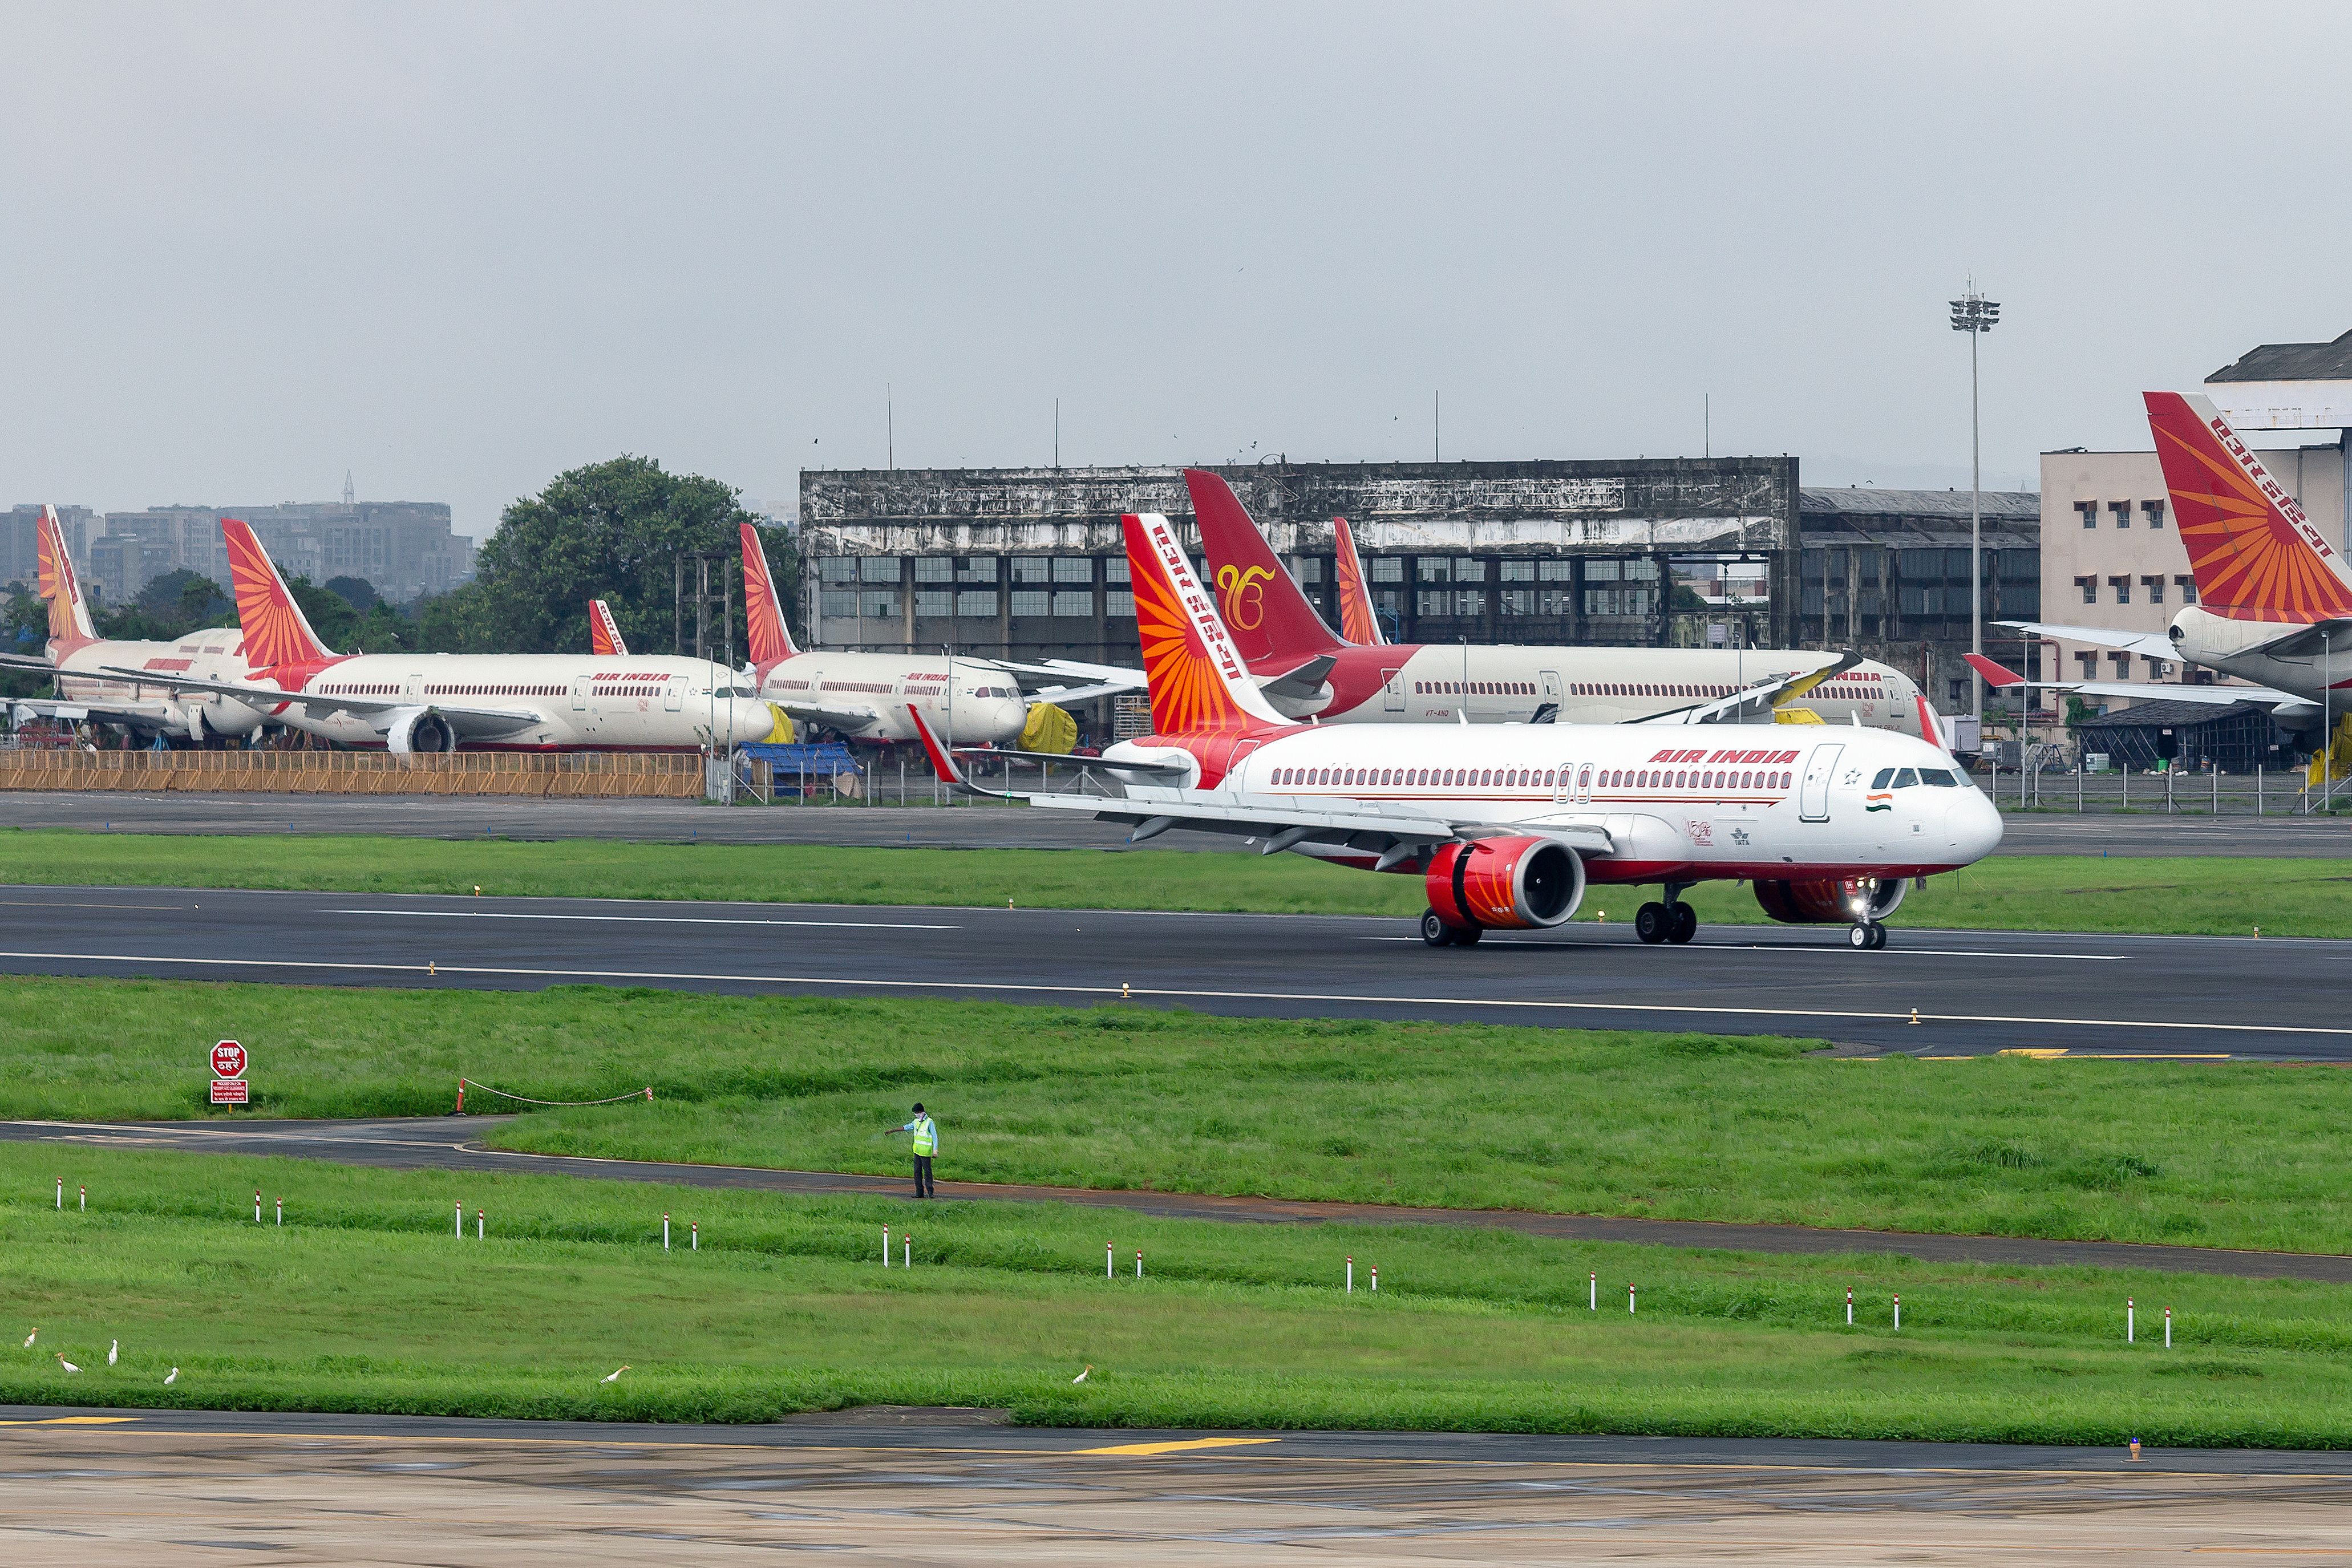 An Air India Airbus A320neo lands at Chhatrapati Shivaji Maharaj International Airport.